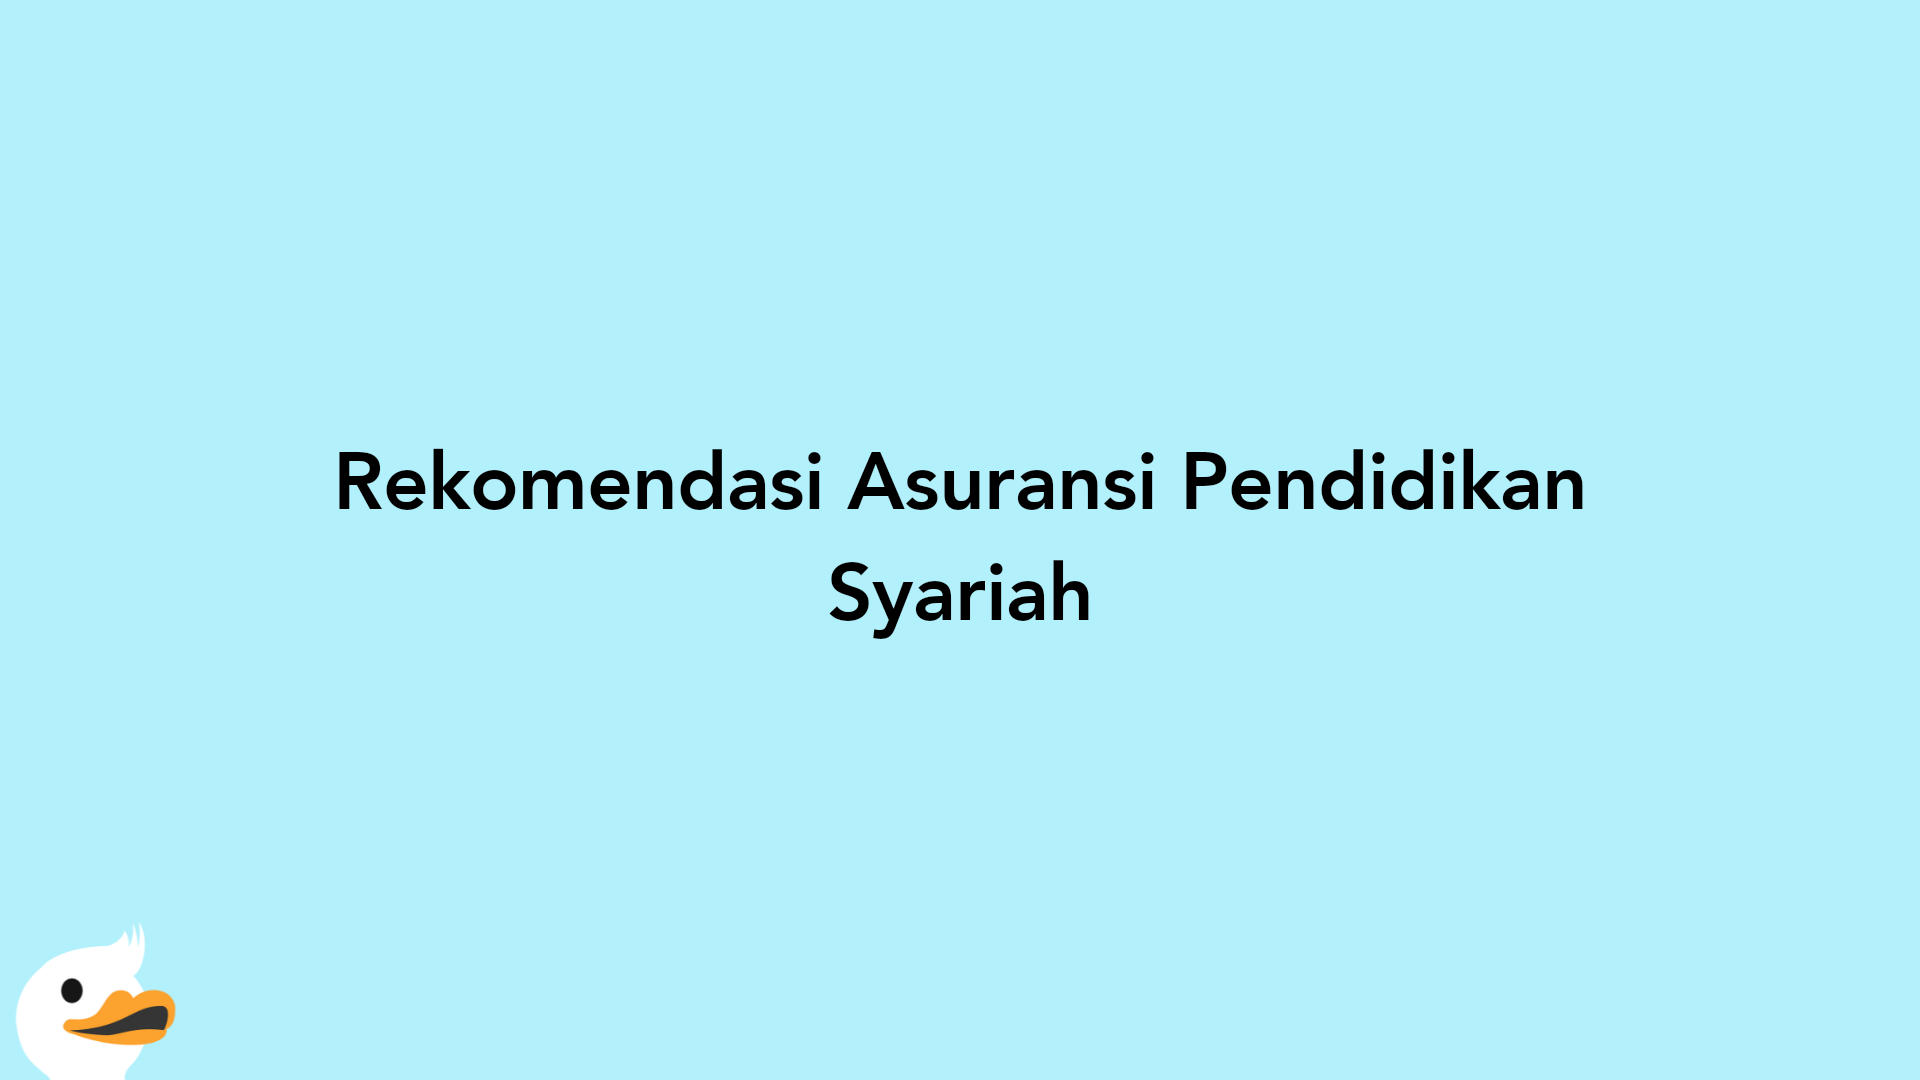 Rekomendasi Asuransi Pendidikan Syariah